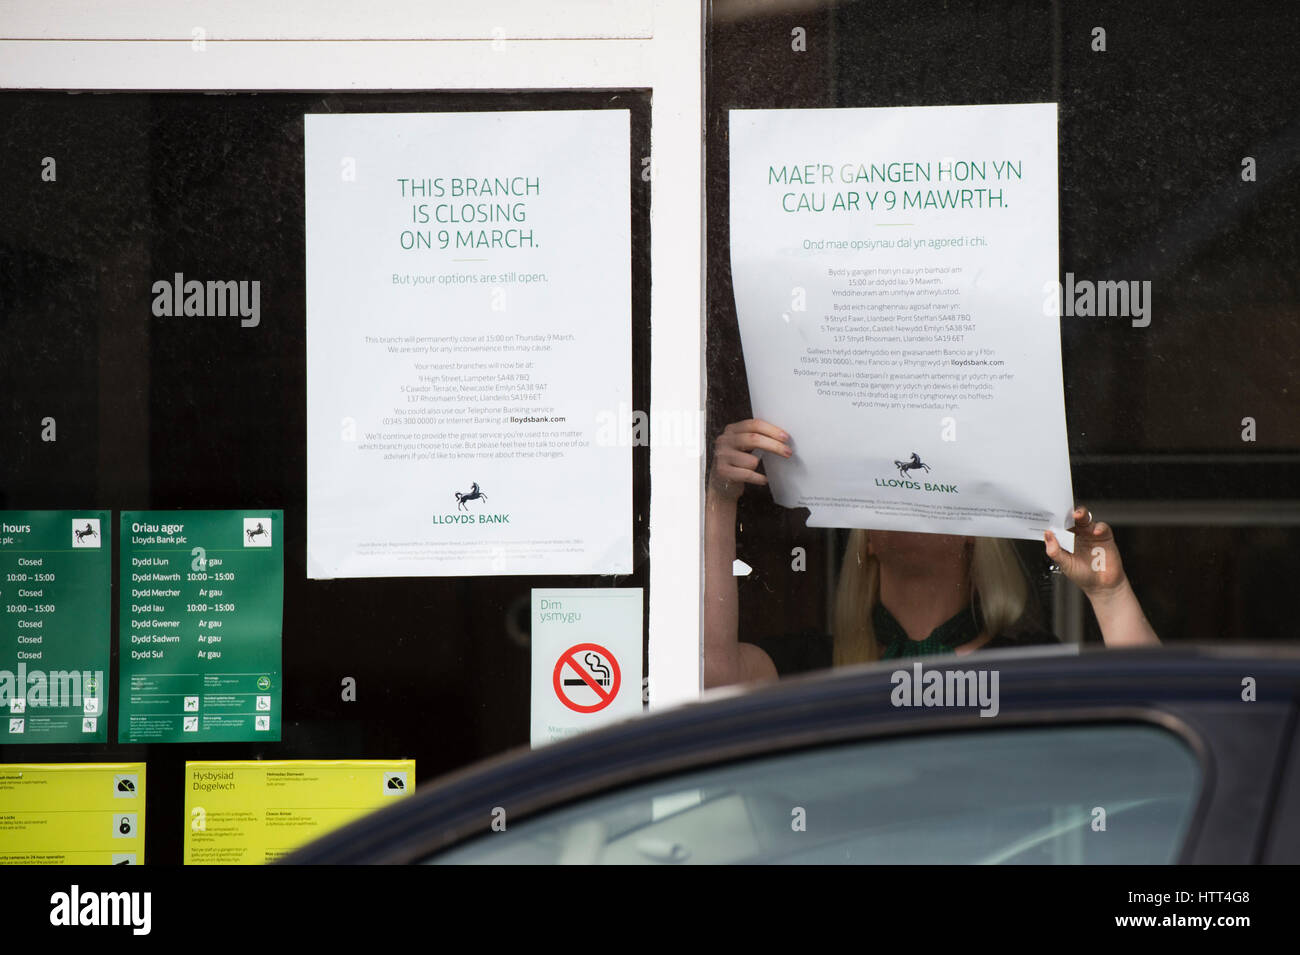 Lloyds Bank schließt seine Niederlassung in einem kleinen walisischen Stadt: 9. März 2017 - ein Frau-Mitarbeiter stellt Informationen im Fenster der Zweig der Lloyds Bank, am Nachmittag geschlossen für das gute, in der kleinen ländlichen Tregaron Dorf Ceredigion Wales UK Stockfoto